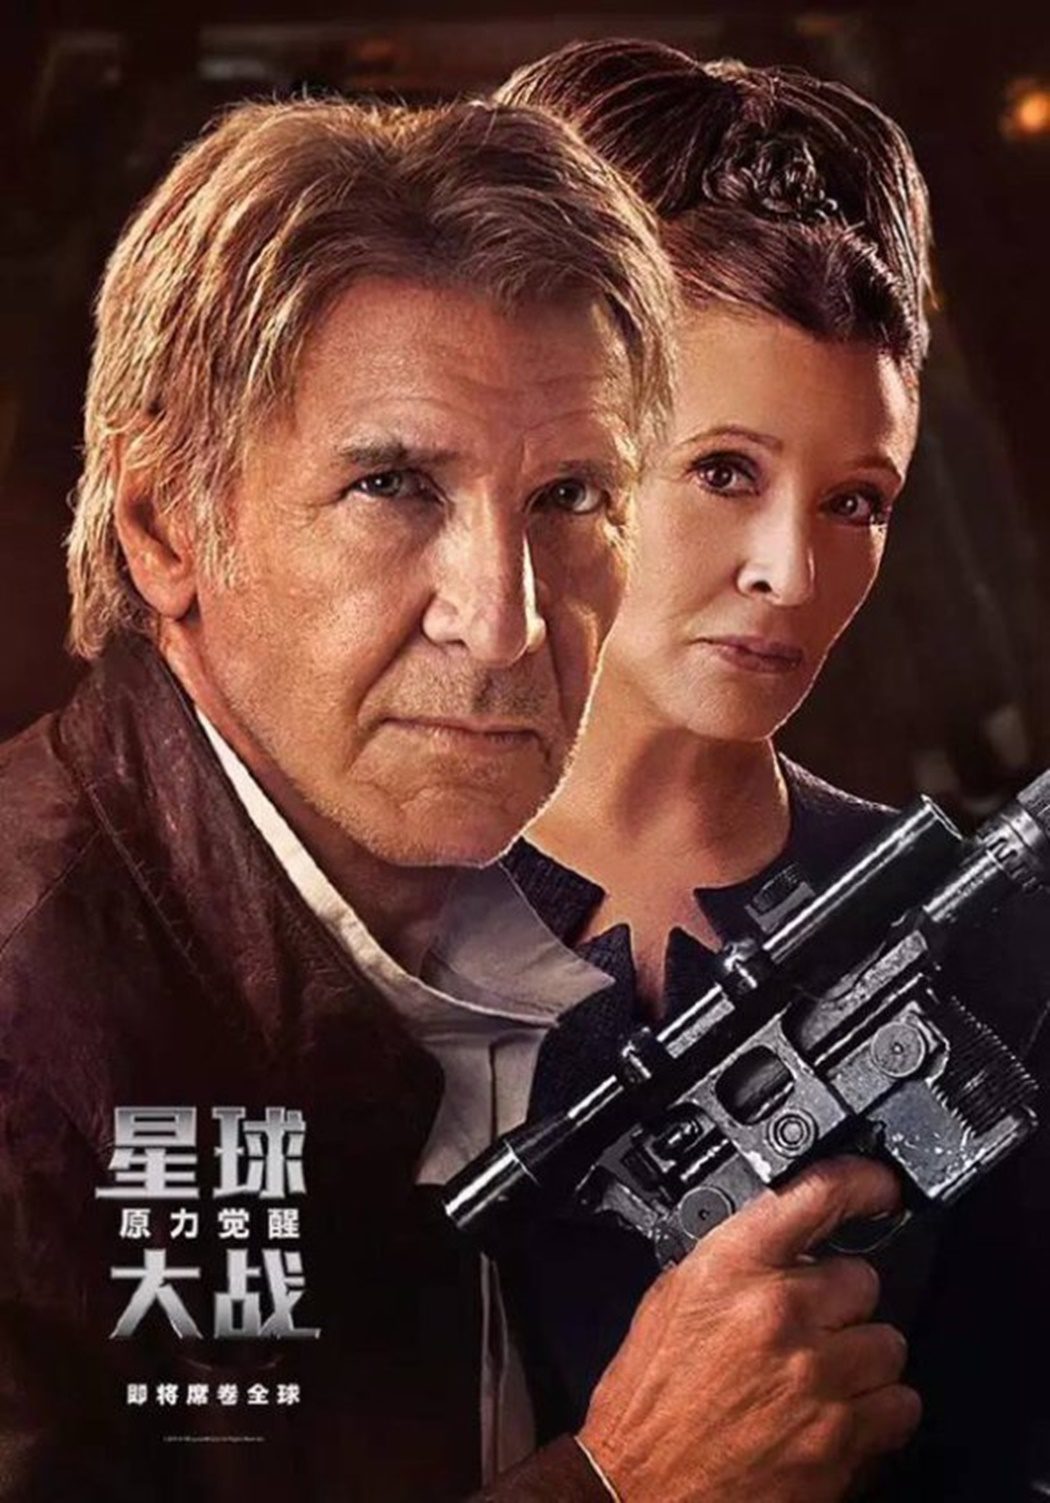 Nuevo cartel: Han Solo y Leia